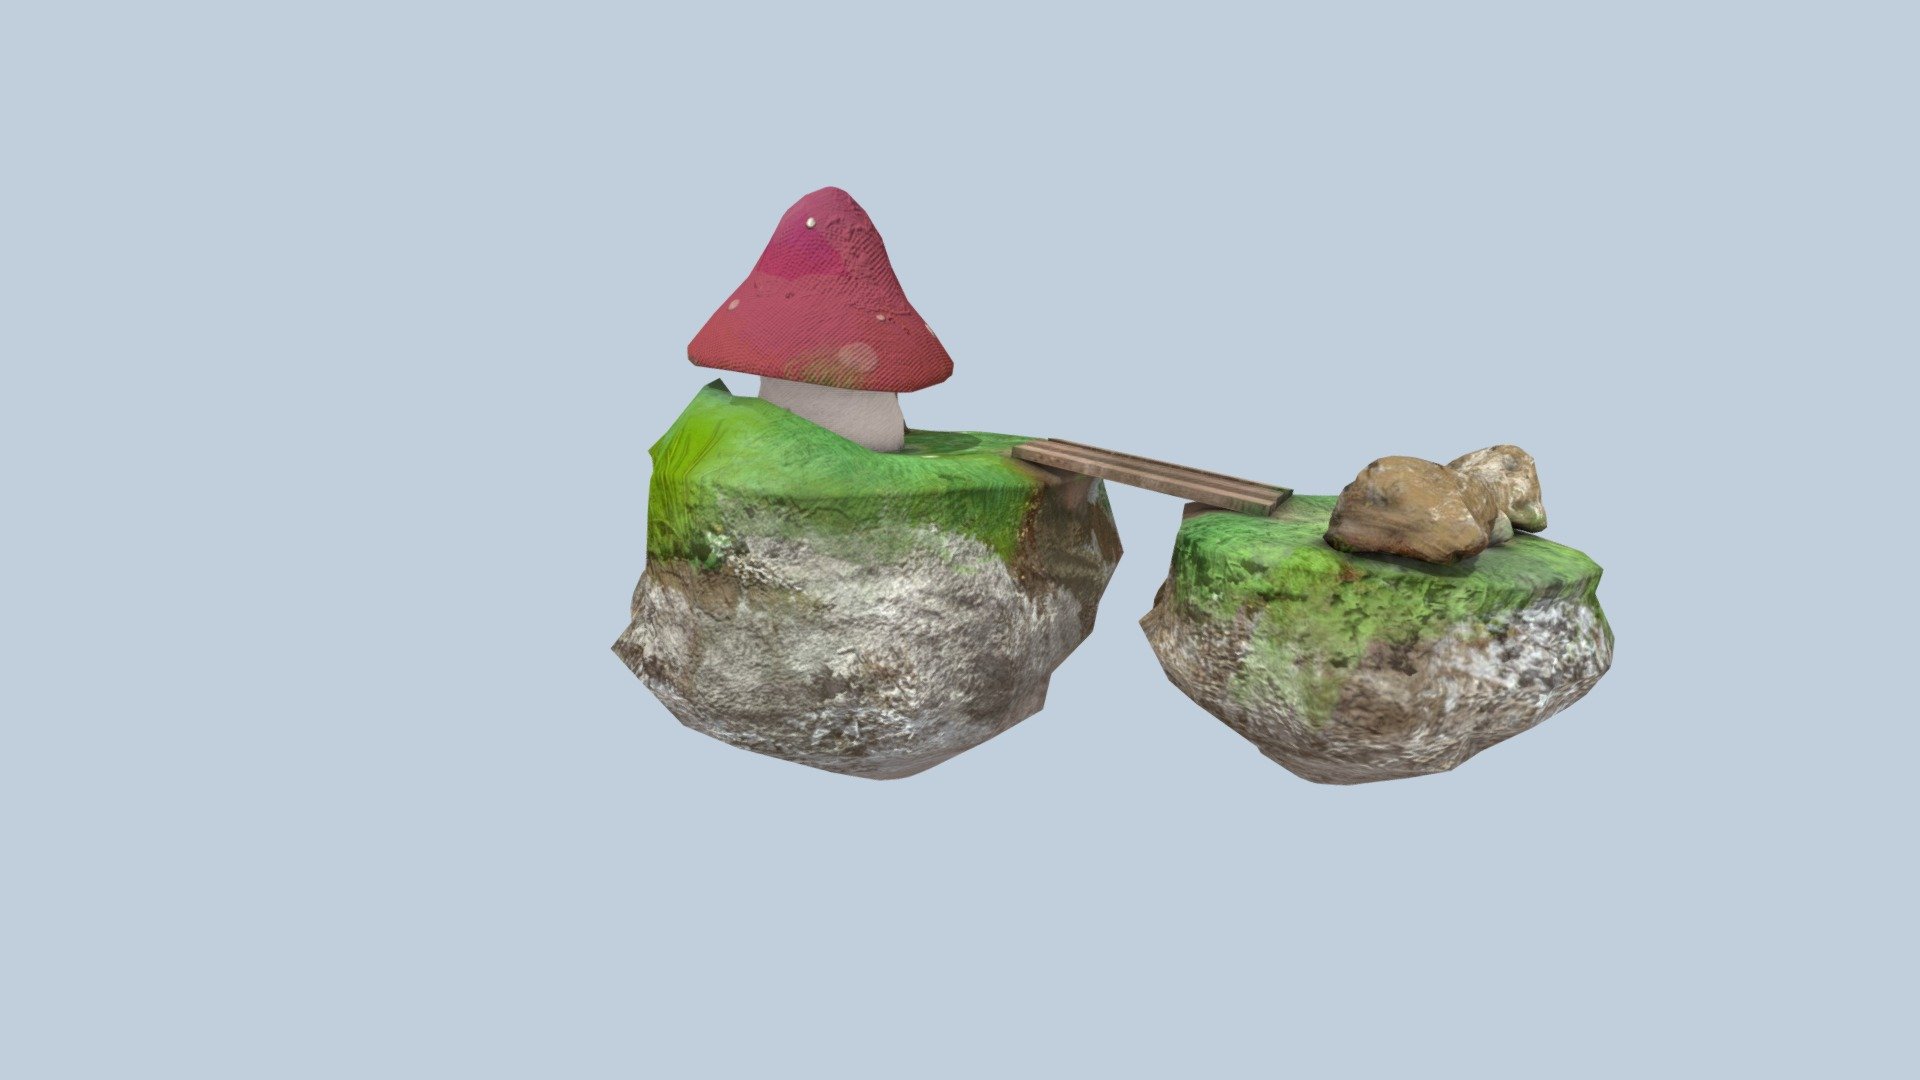 Mushroom House Diorama - 3D model by DennyDigitalDesigns 3d model